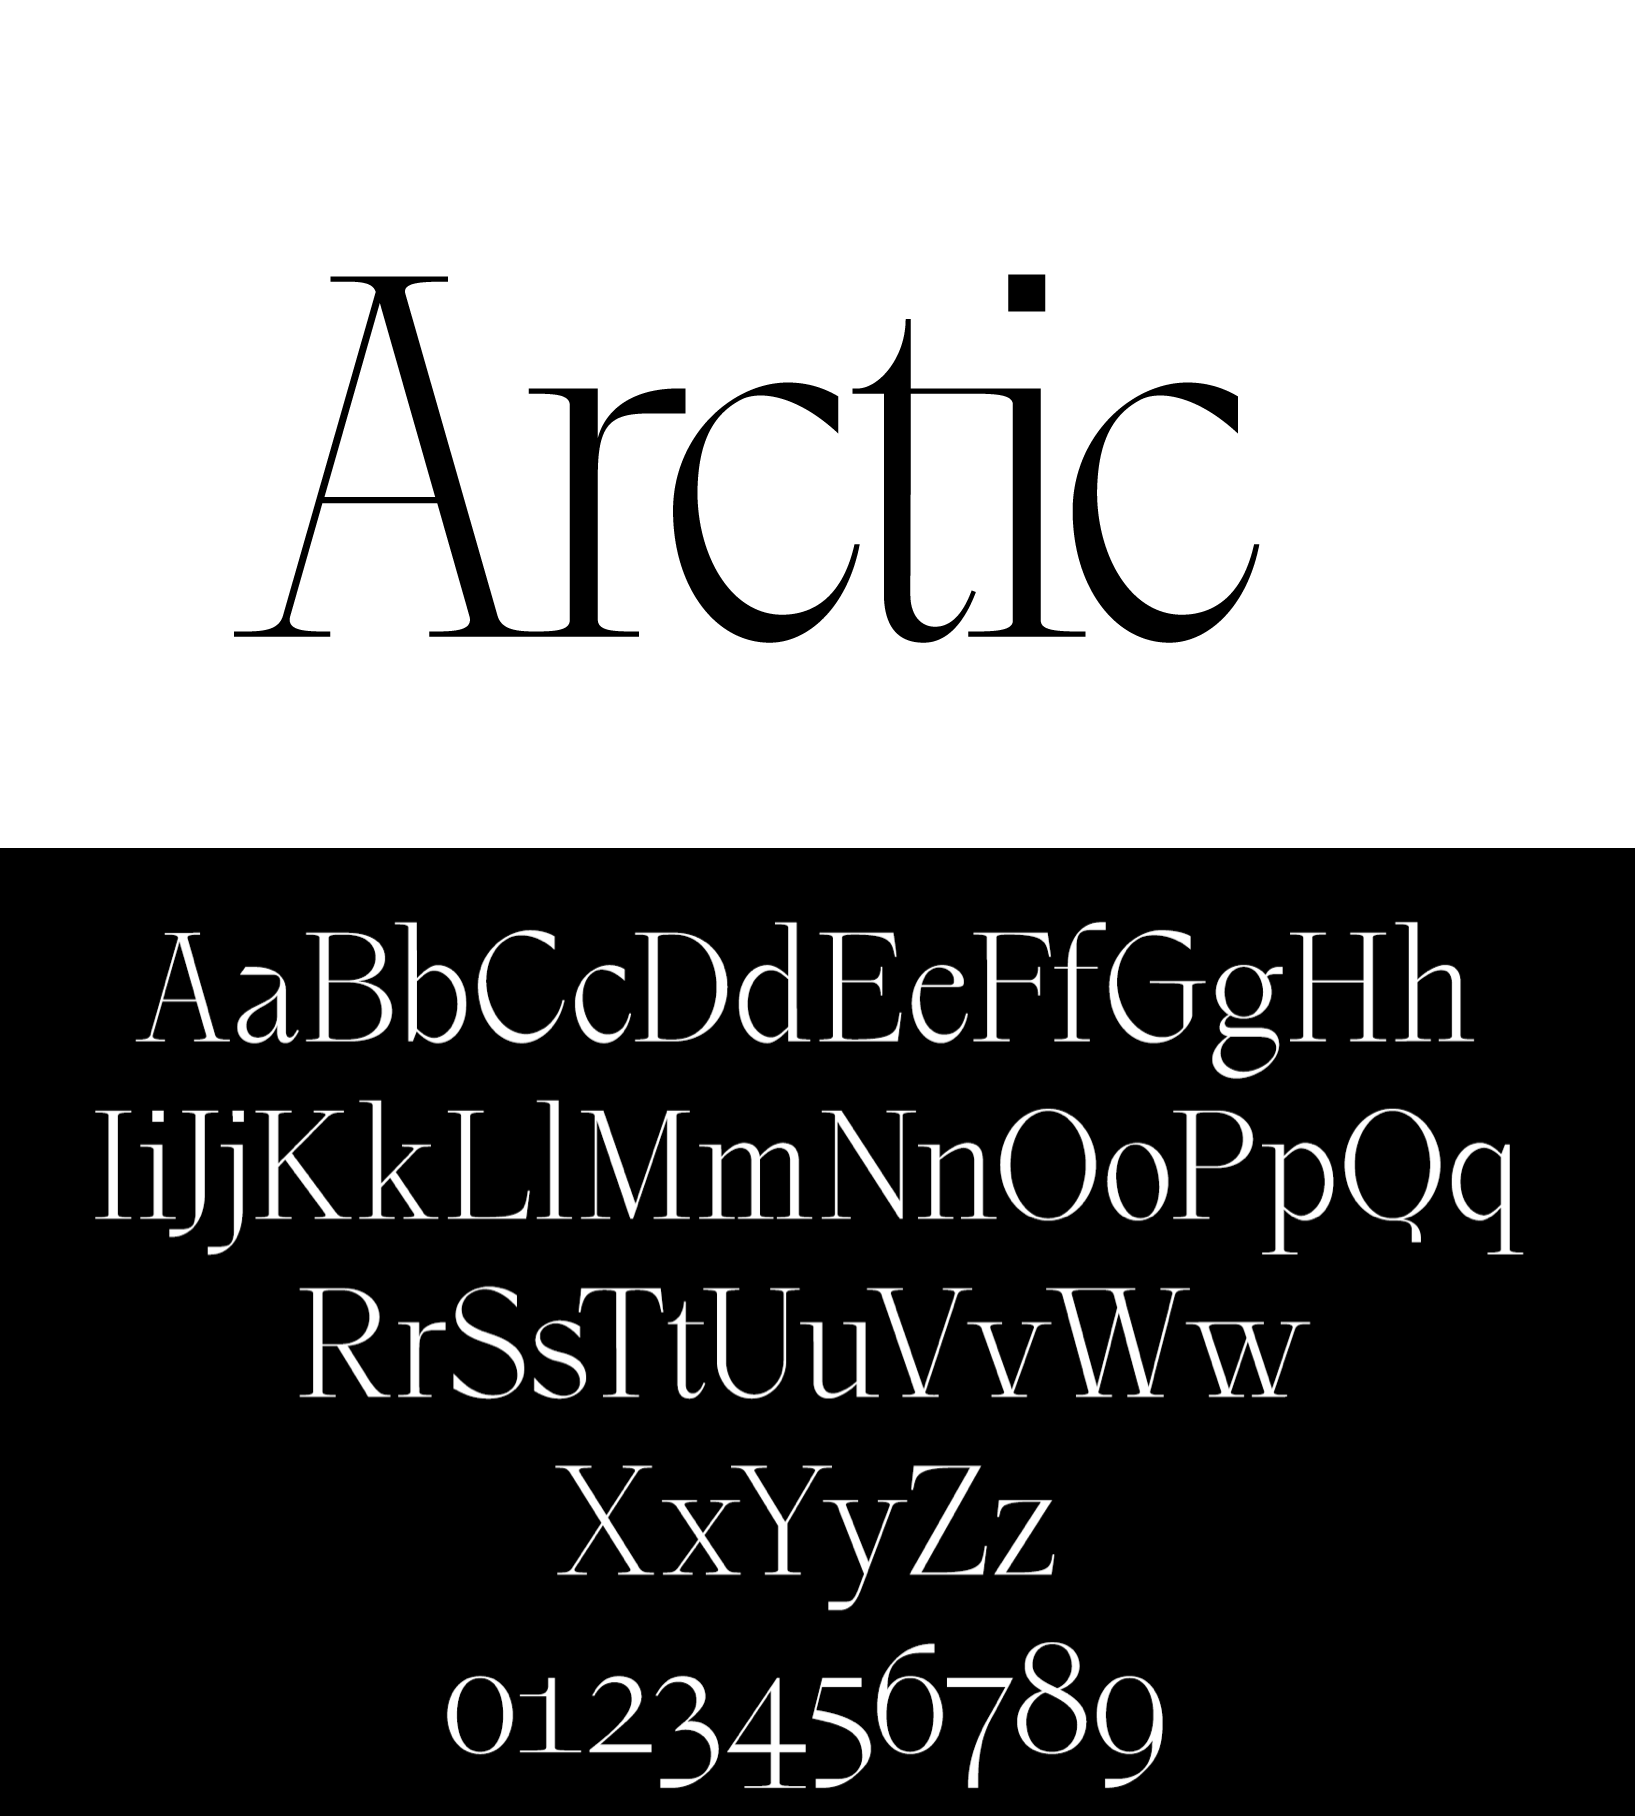 Ejemplo de fuente BL Arctic Regular